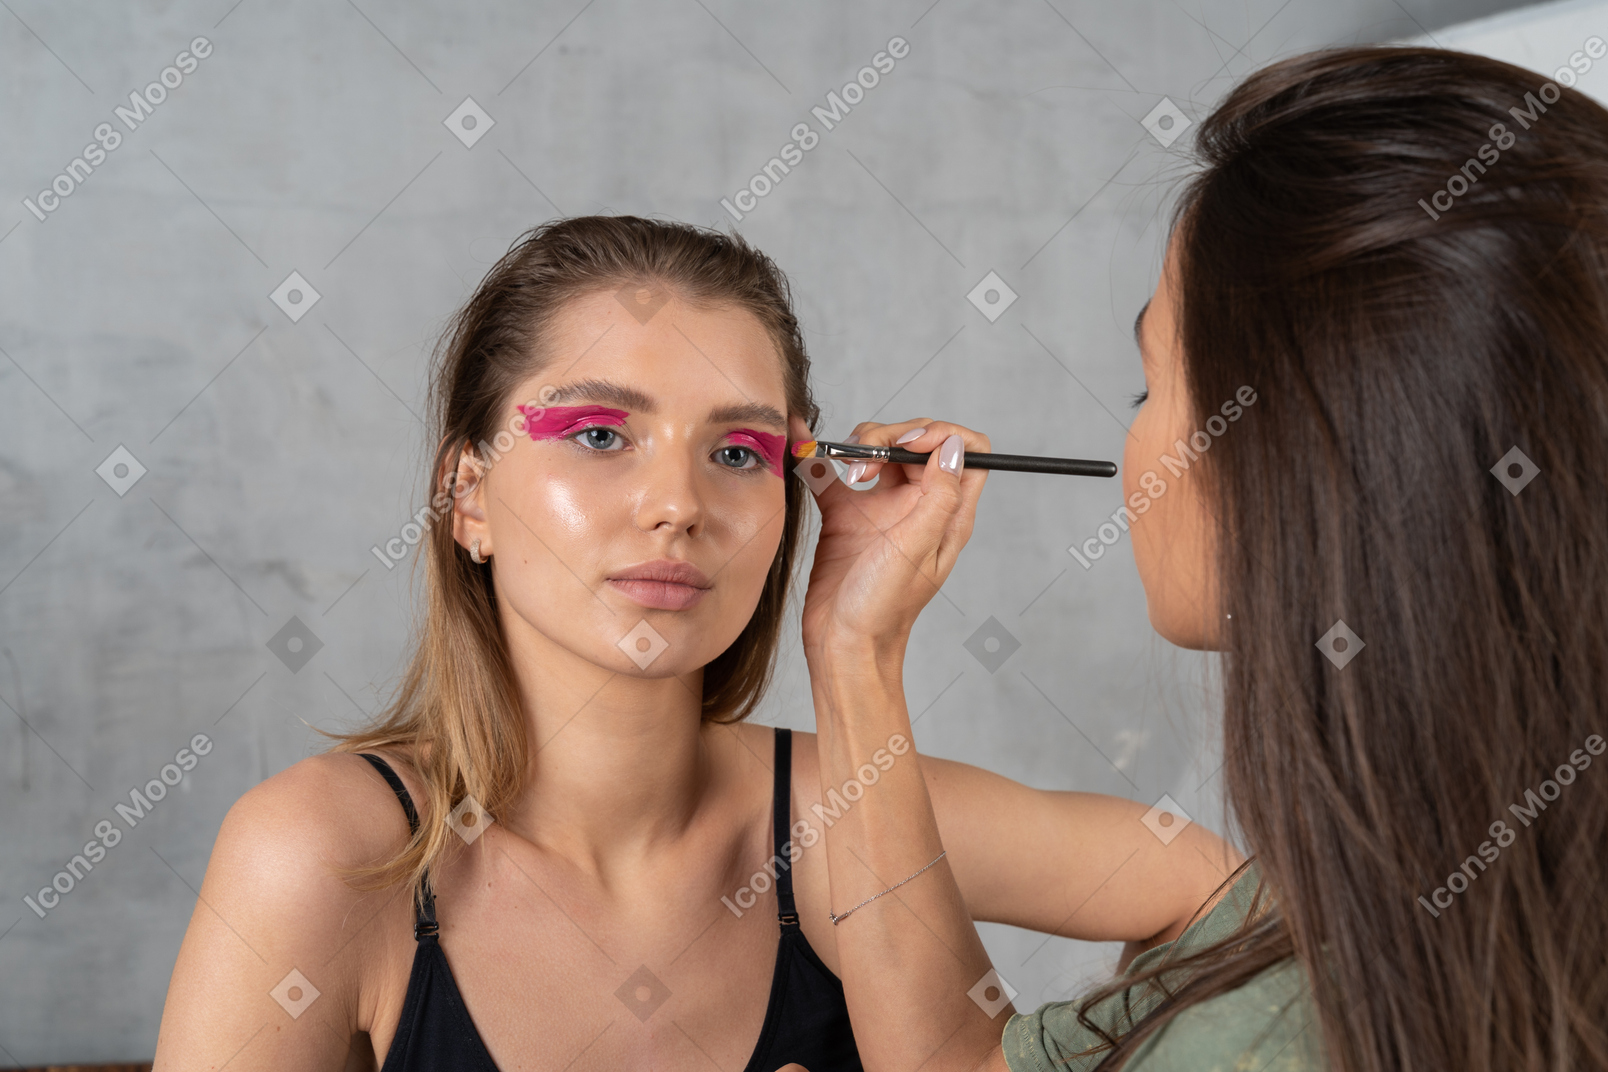 Vista frontal de uma jovem com maquiagem de olhos rosa brilhante e seu maquiador